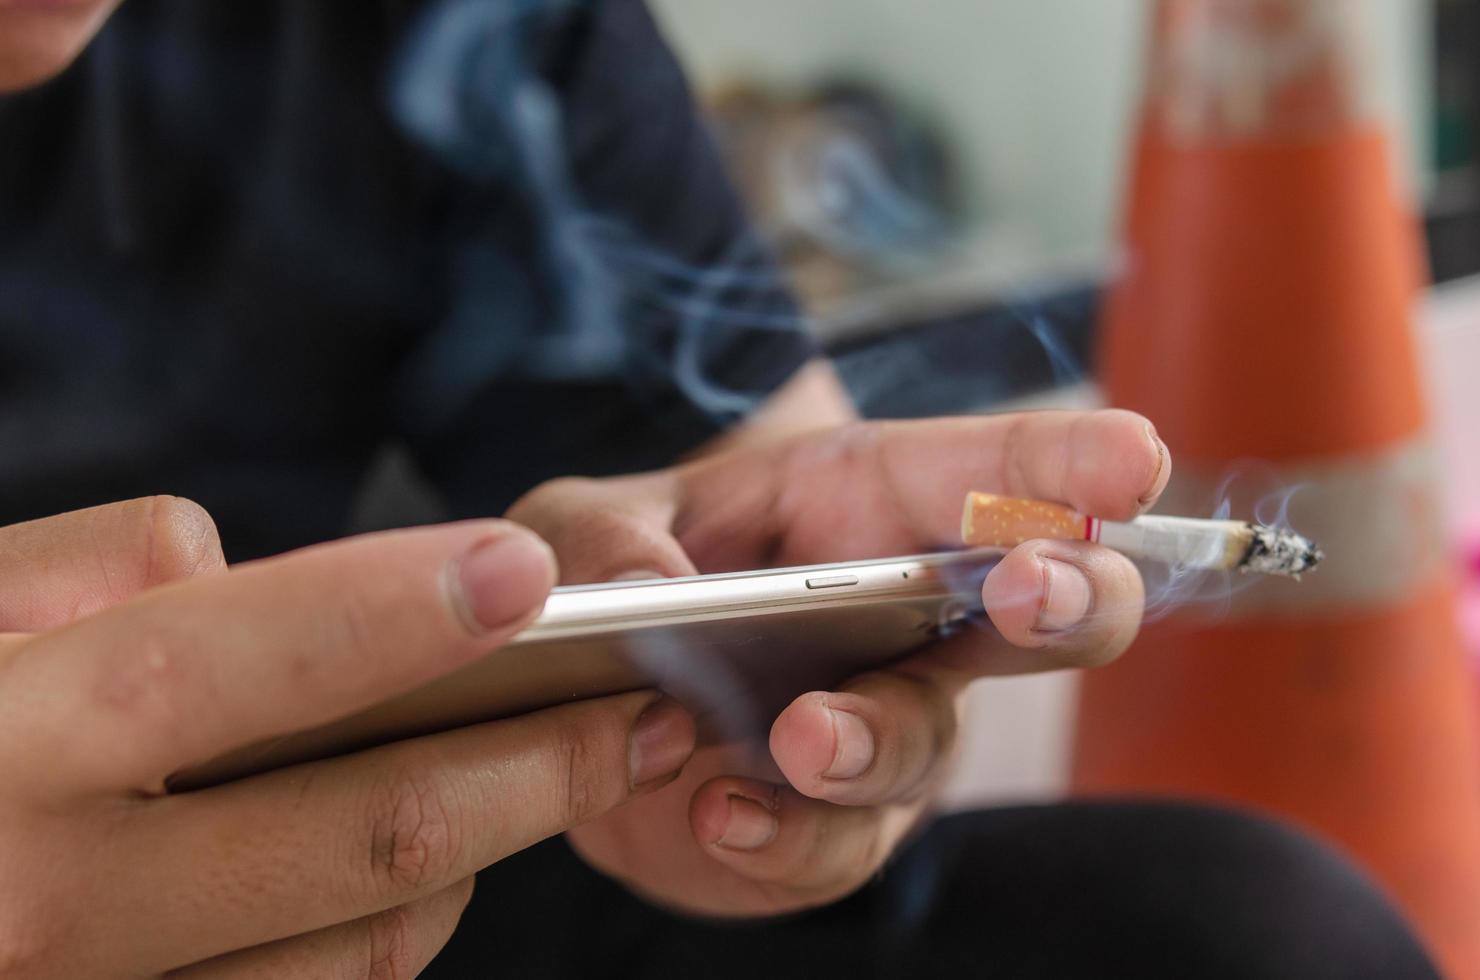 pessoa fumando um cigarro enquanto envia mensagens de texto em um smartphone foto